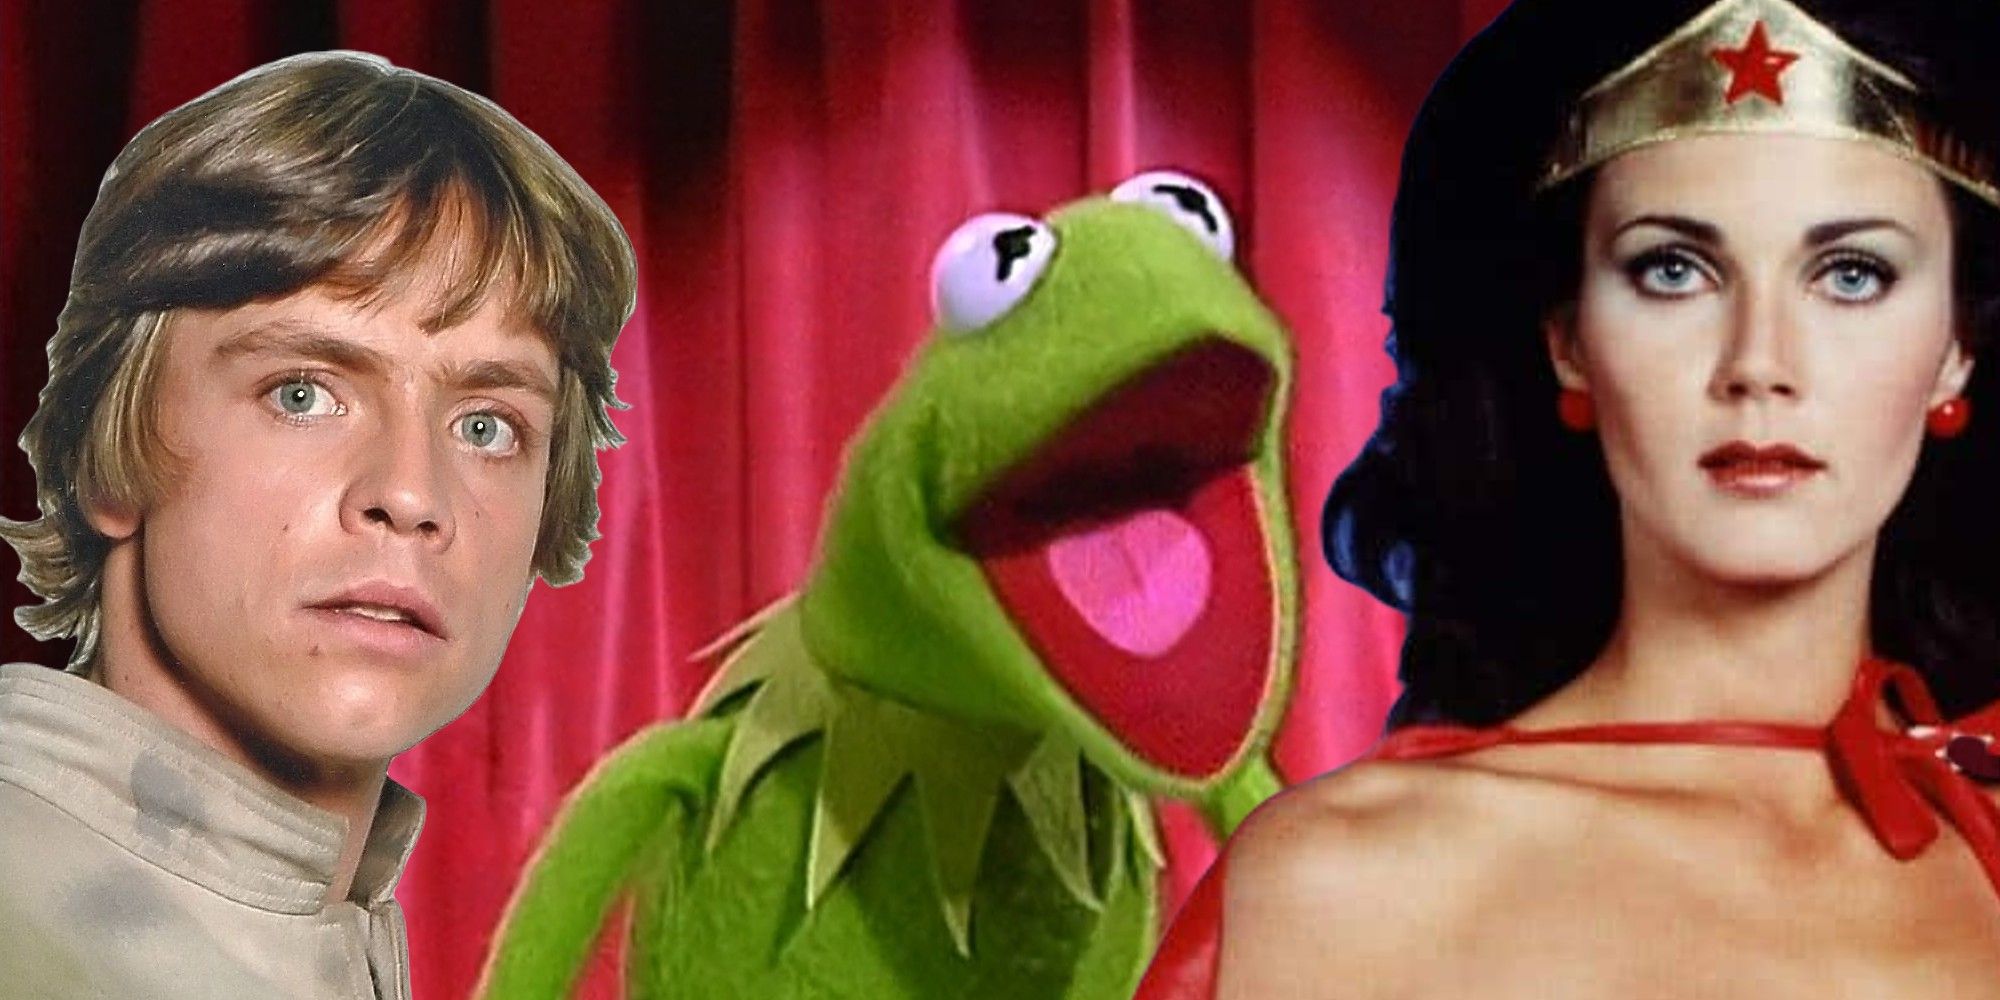 Muppet Show, Kermit the Frog, Mark Hamill as Luke Skywalker, Lynda Carter as Wonder Woman 